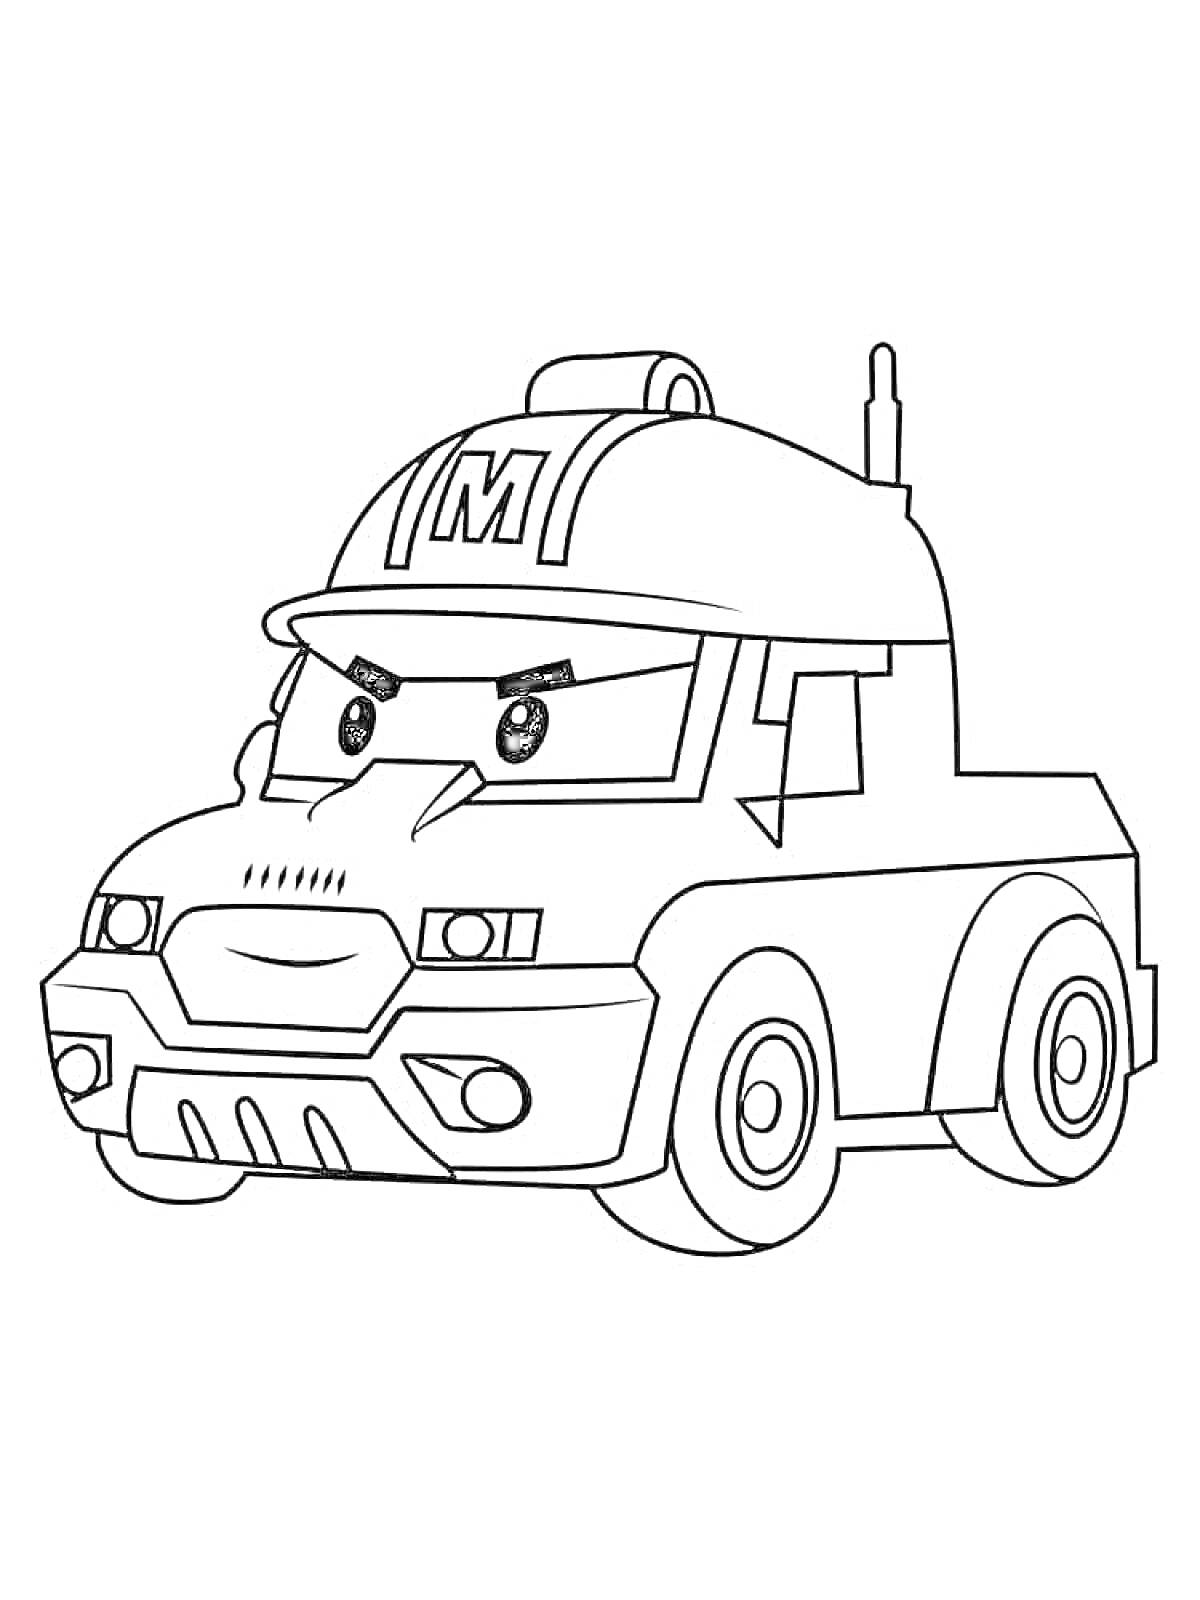 Раскраска Раскраска с изображением робокара Поли с бровями в форме грузовика с мигалками